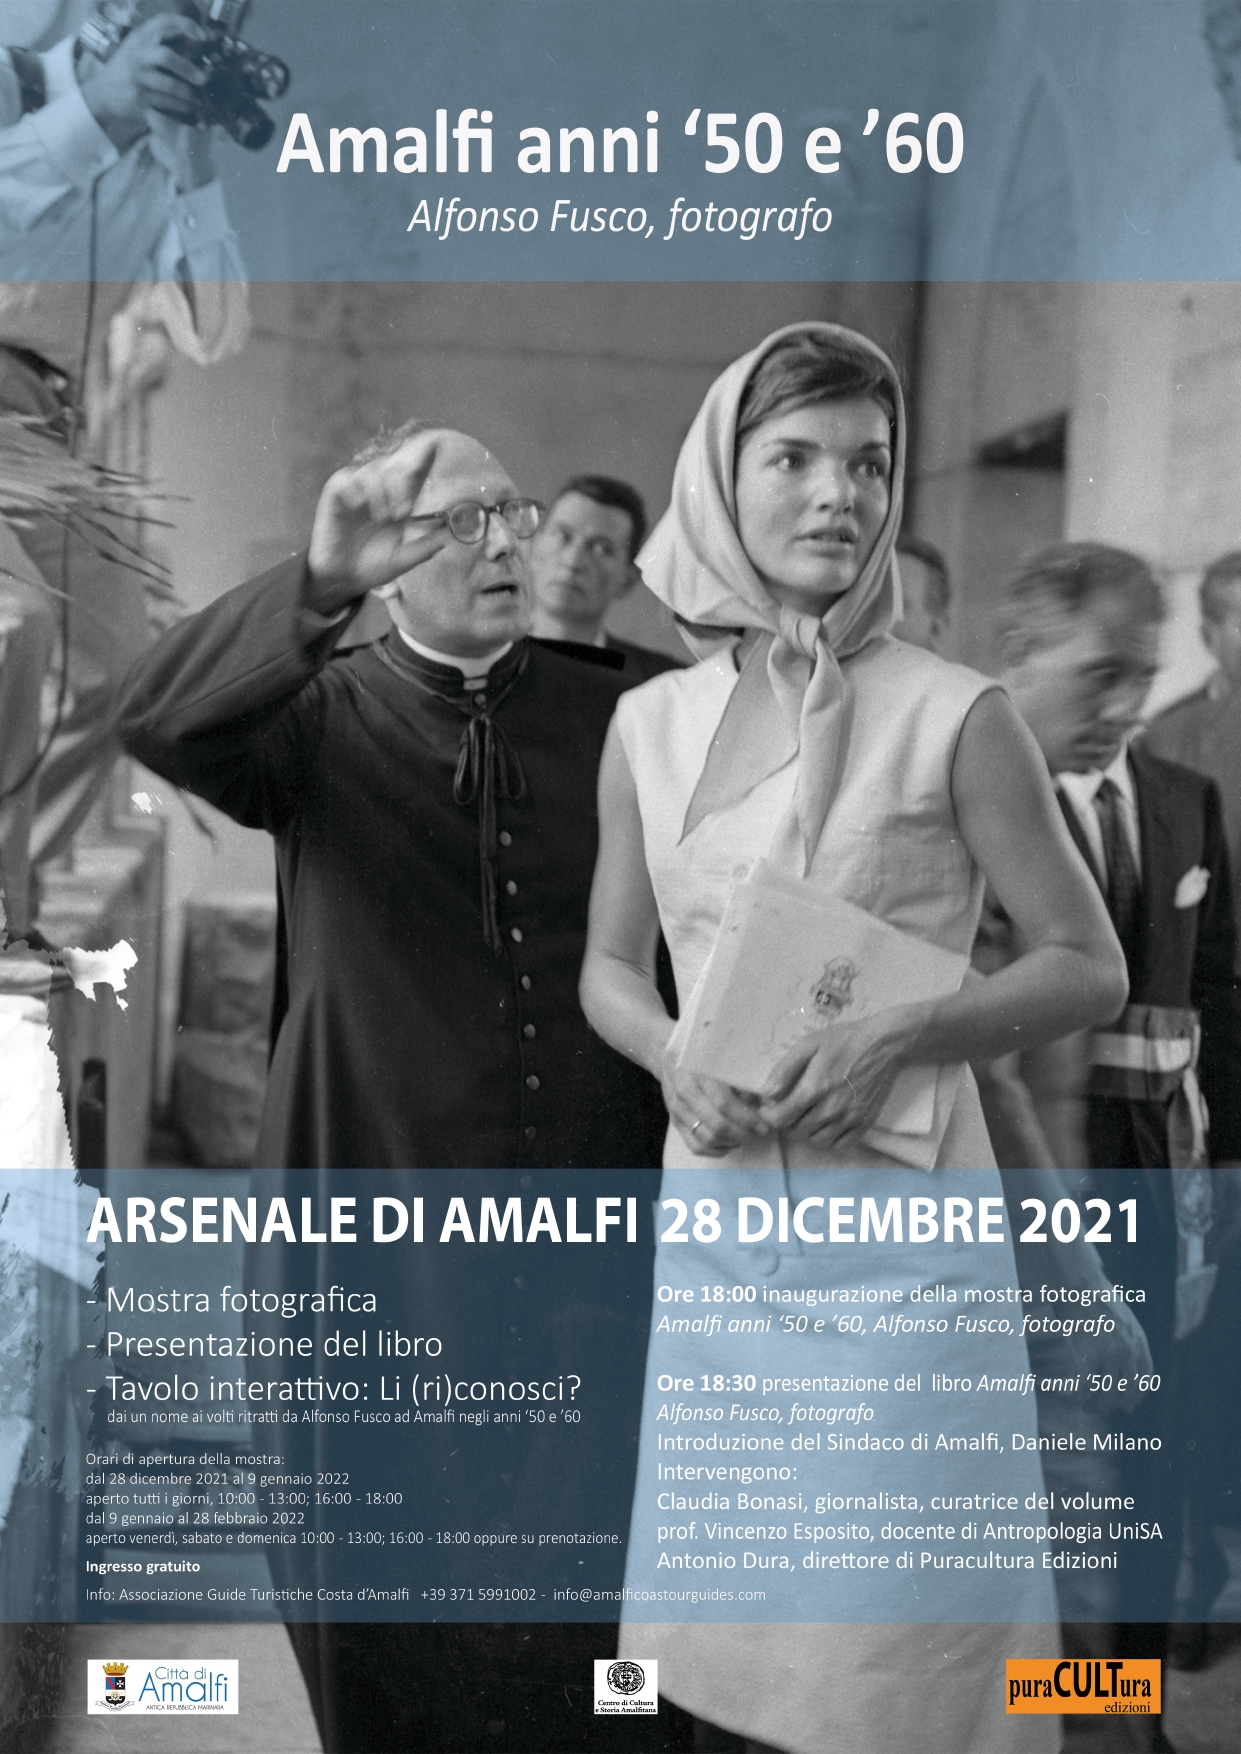 Alfonso Fusco in mostra, storie di Amalfi negli anni '50 e '60